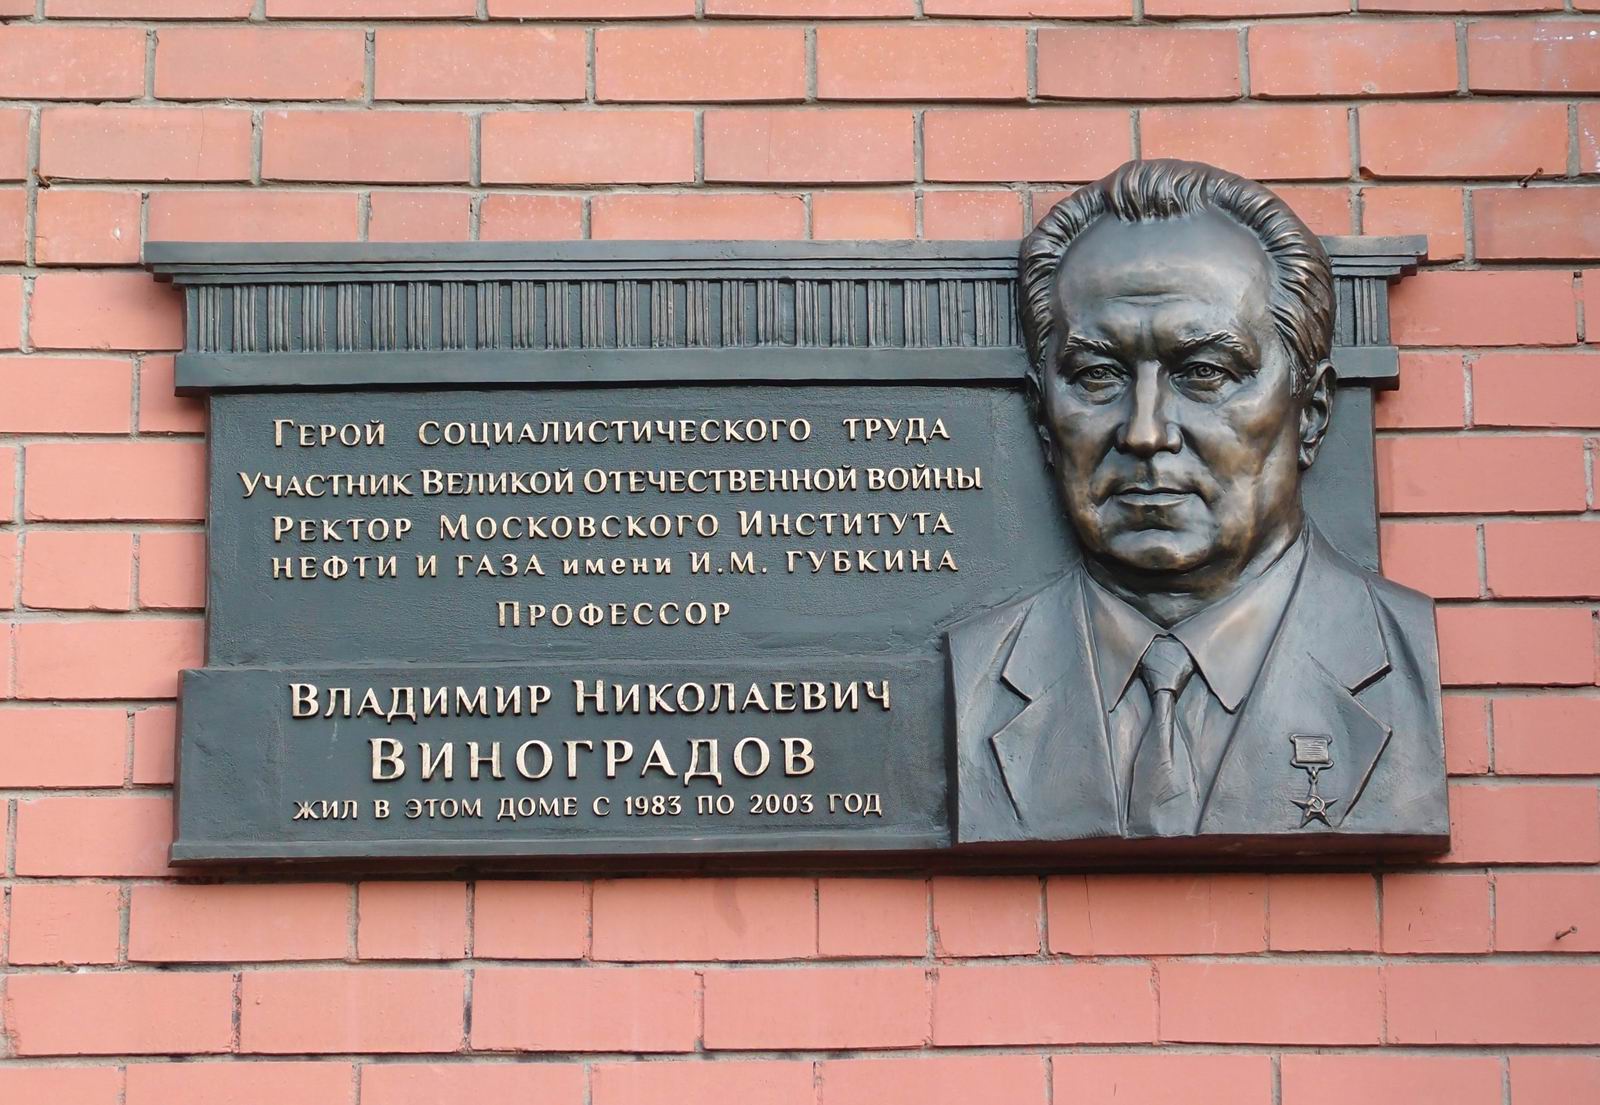 Мемориальная доска Виноградову В.Н. (1923–2003), на Профсоюзной улице, дом 43, корпус 1, открыта 25.2.2020.